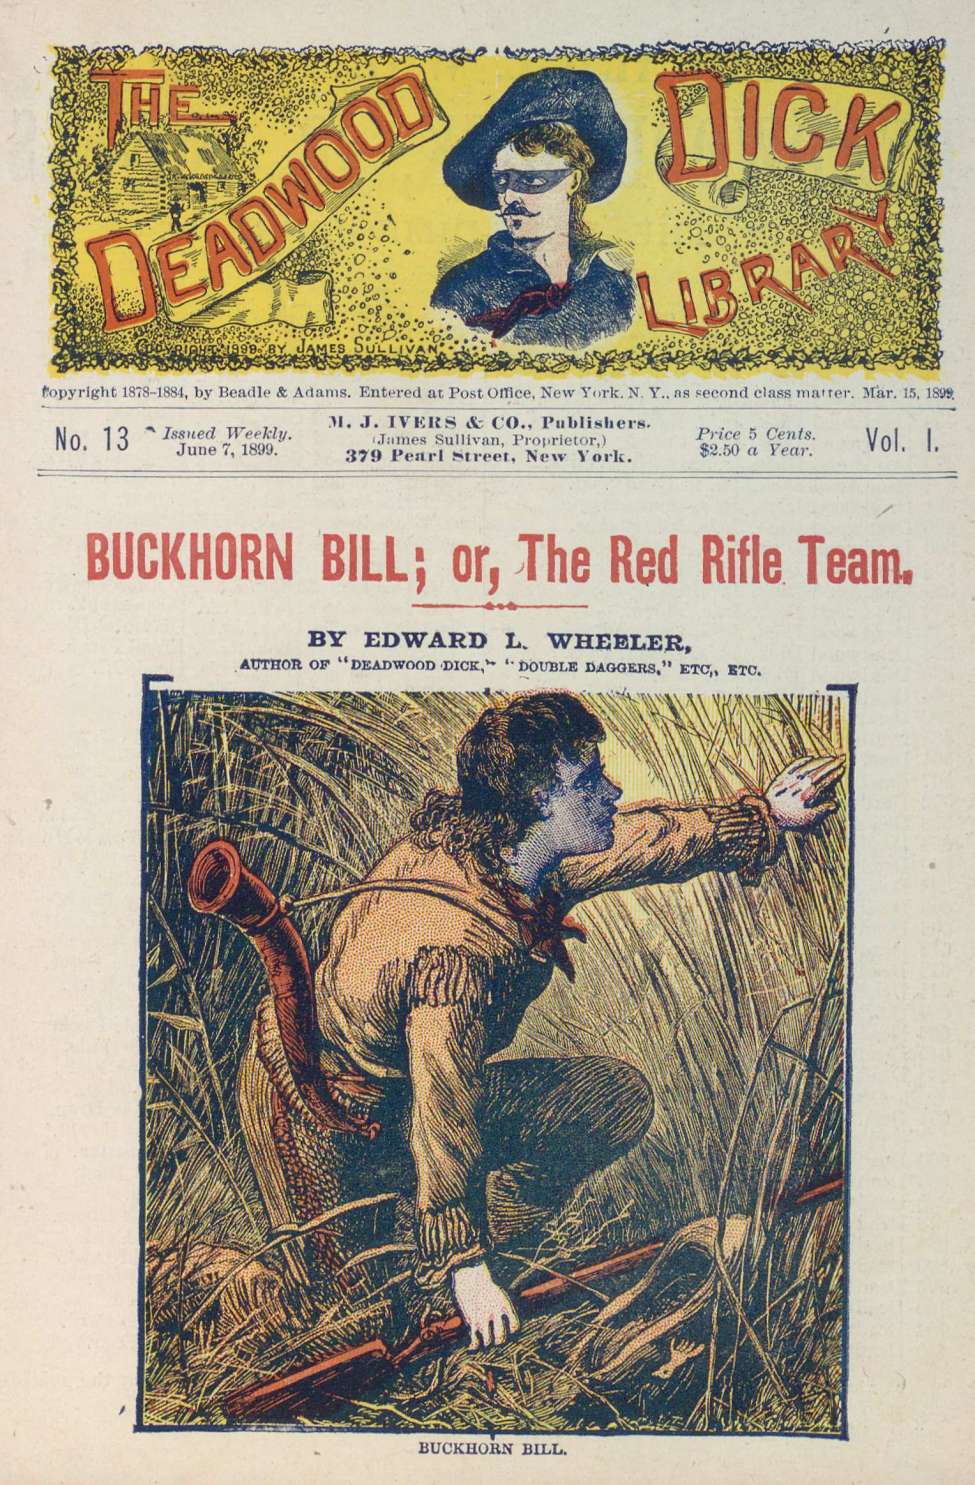 Book Cover For Deadwood Dick Library v1 13 - Buckhorn Bill